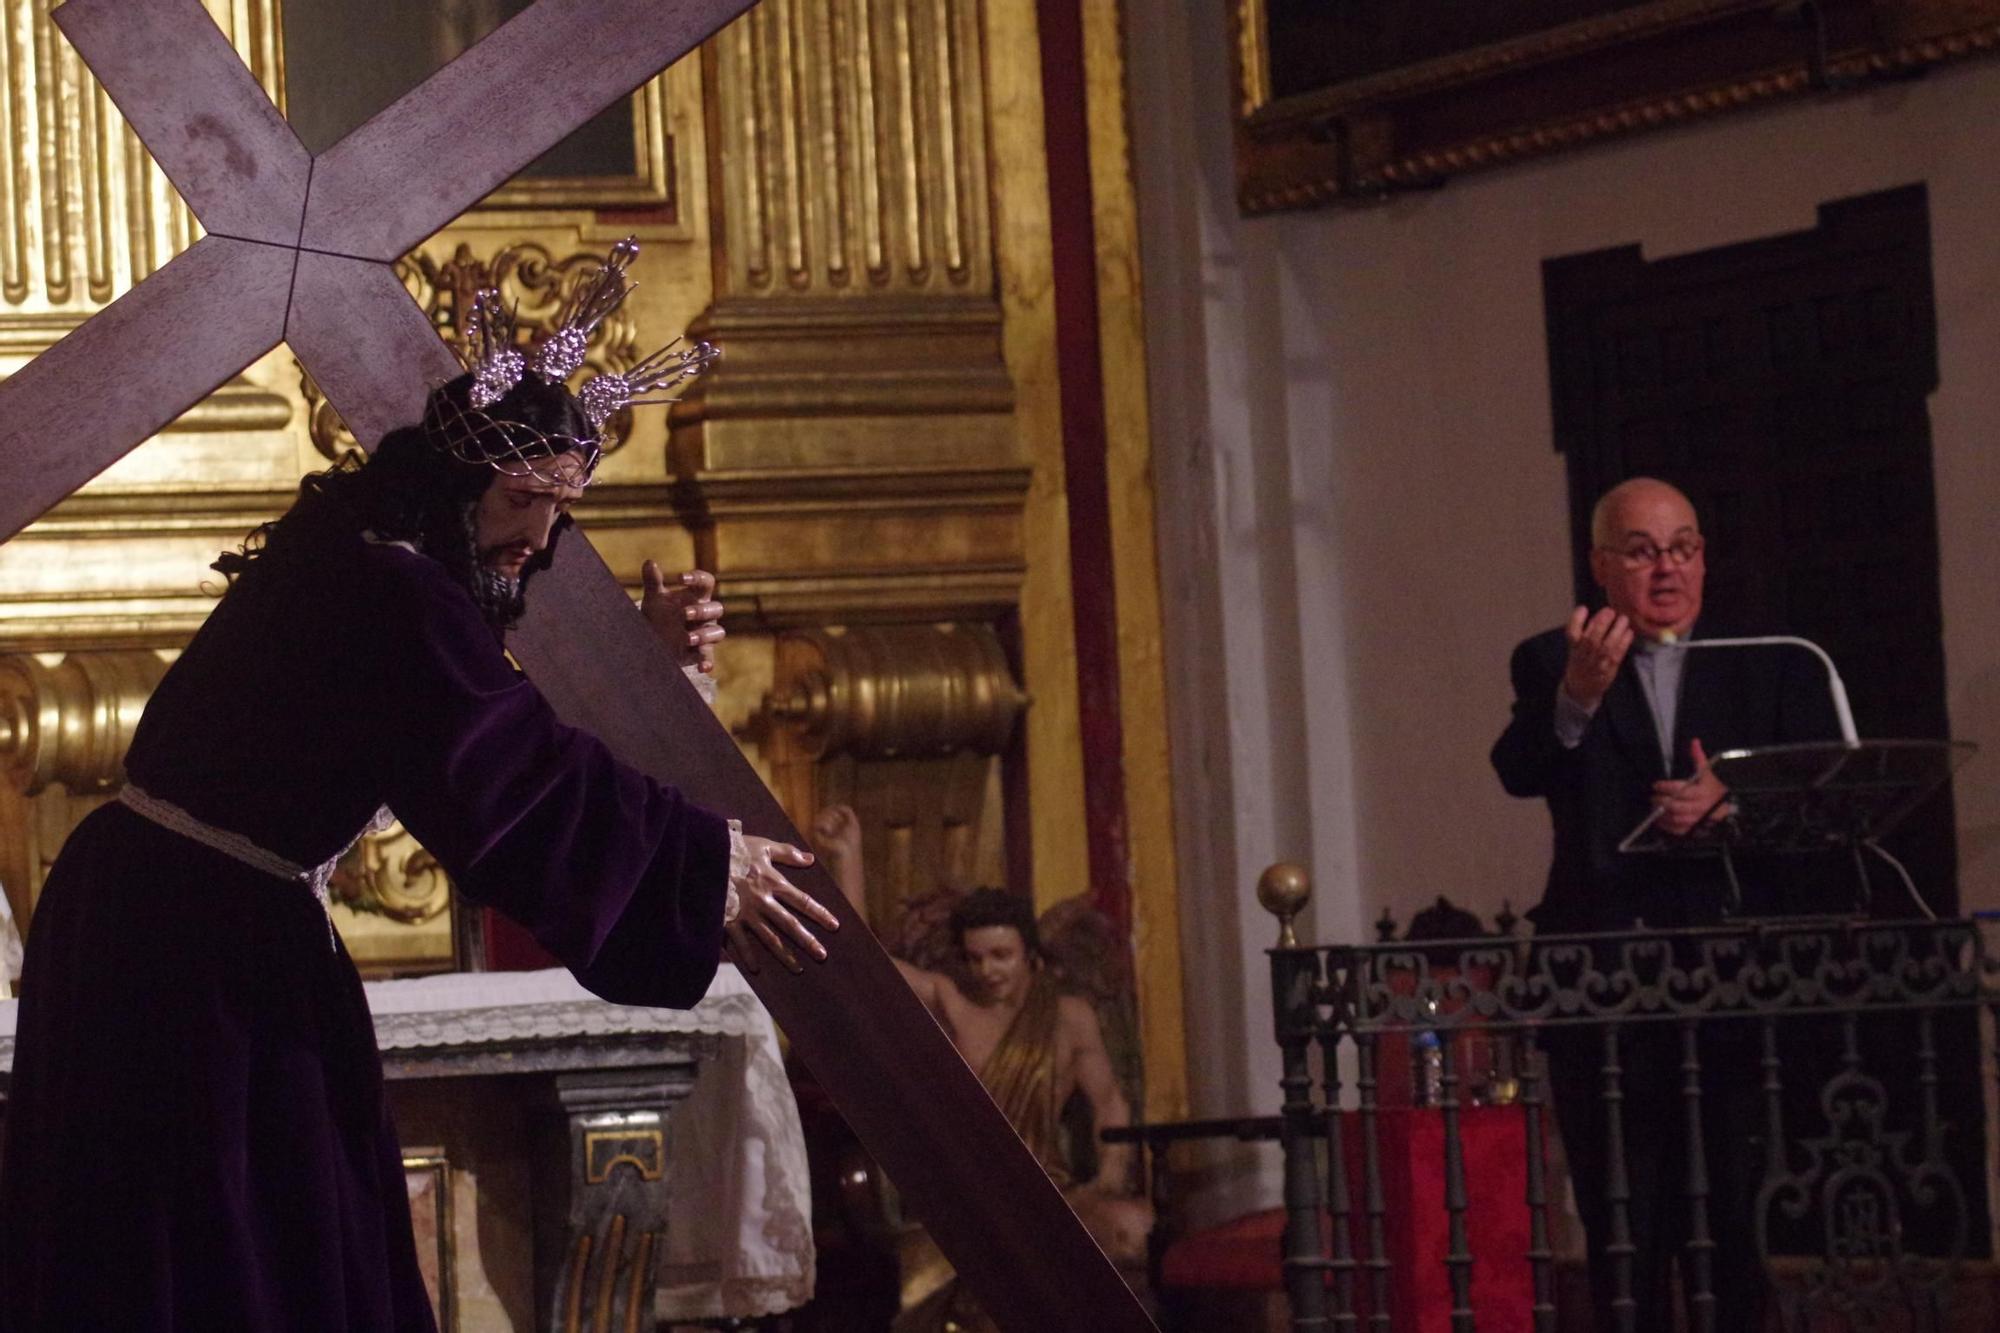 Nueva imagen de Jesús Nazareno con la Llaga en el Hombro, obra del imaginero Alejandro Paneque, presentada en la iglesia de San Julián